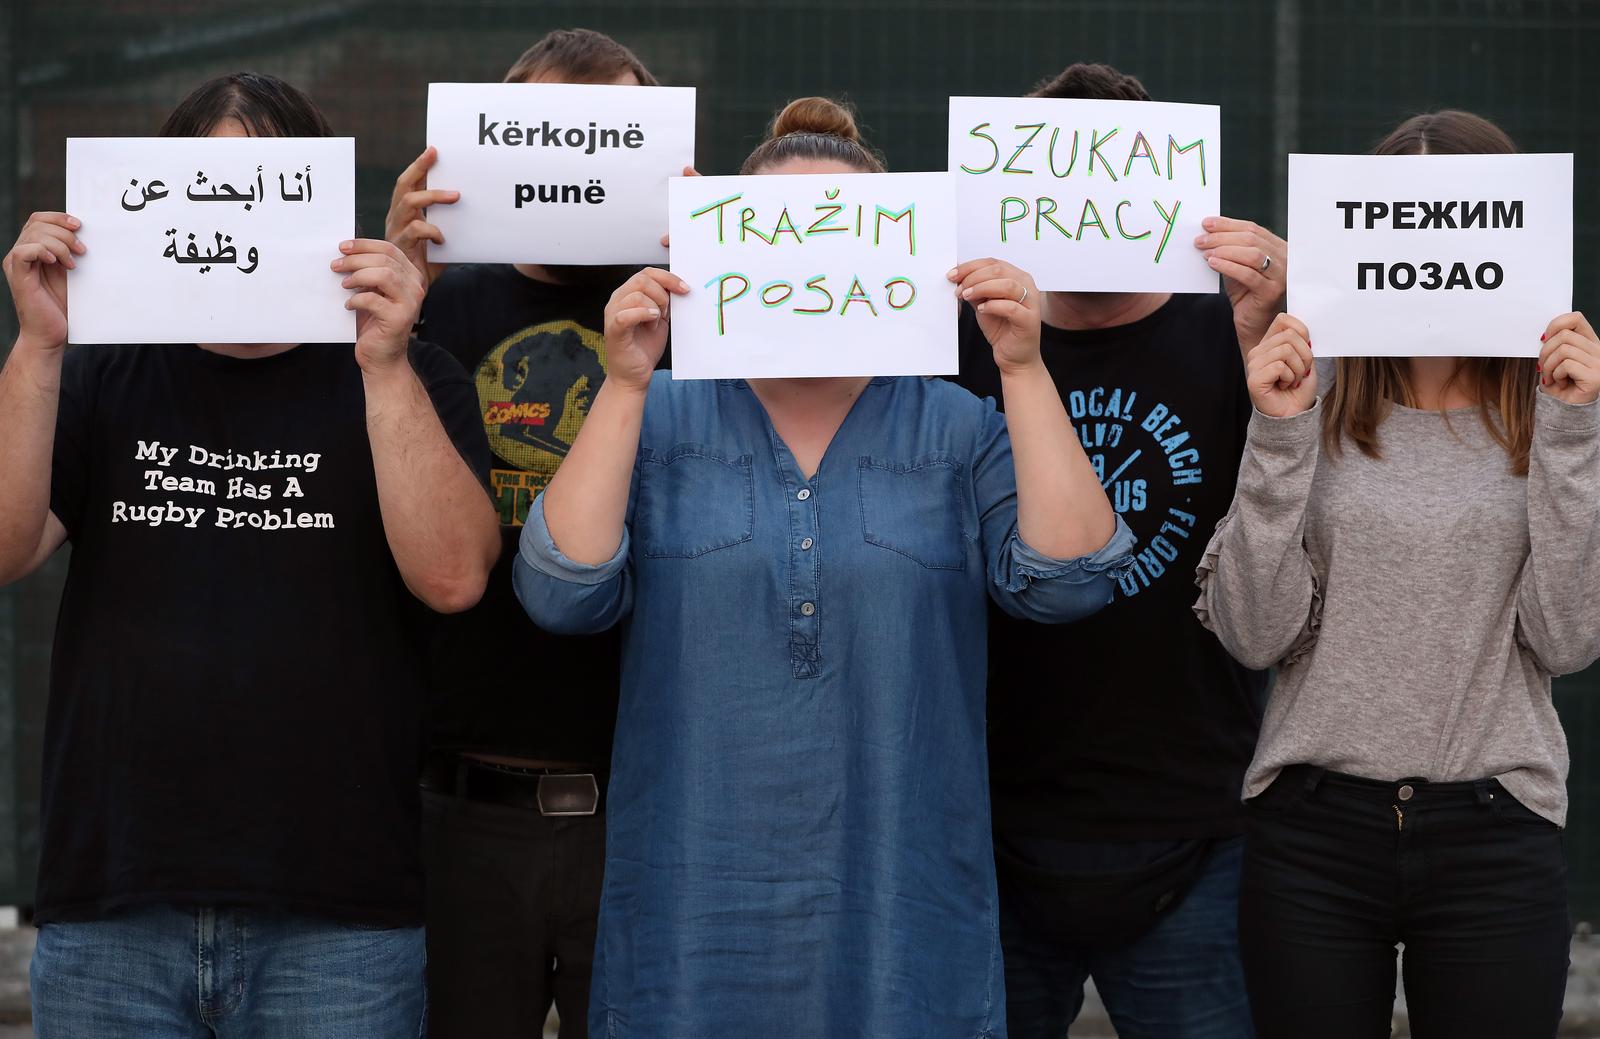 Ilustracija za stranu radnu snagu 05.09.2018., Zagreb - Ilustracija za stranu radnu snagu. Photo: Jurica Galoic/PIXSELL